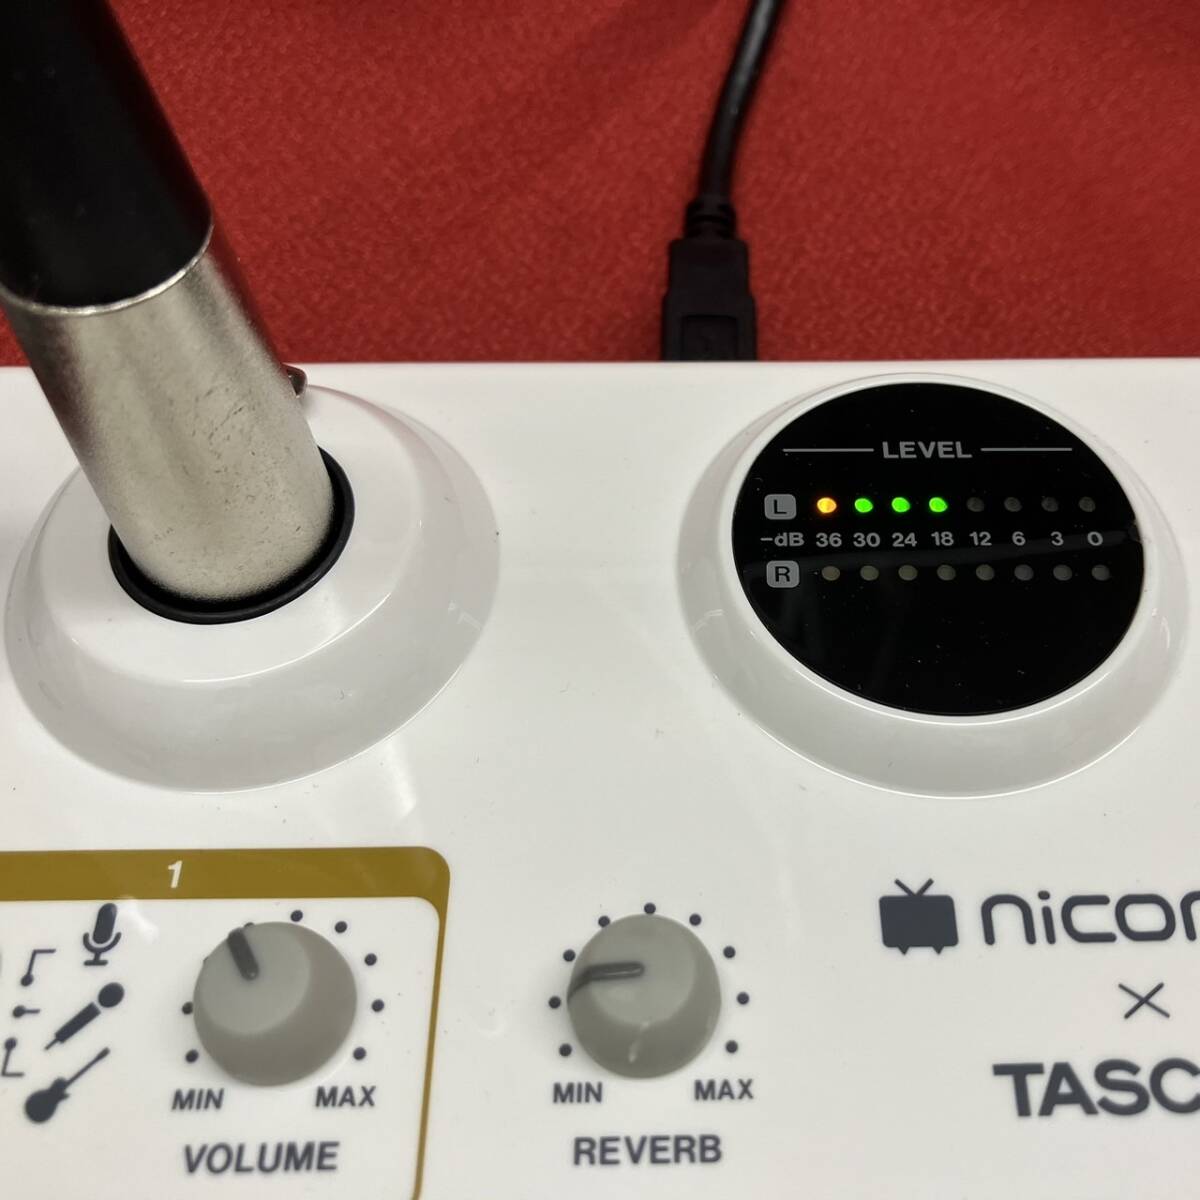 TEAC TASCAM USBオーディオインターフェース US-42 ニコニコ動画モデル,コンデンサーマイクロホン TM-80 オマケ付きの画像5